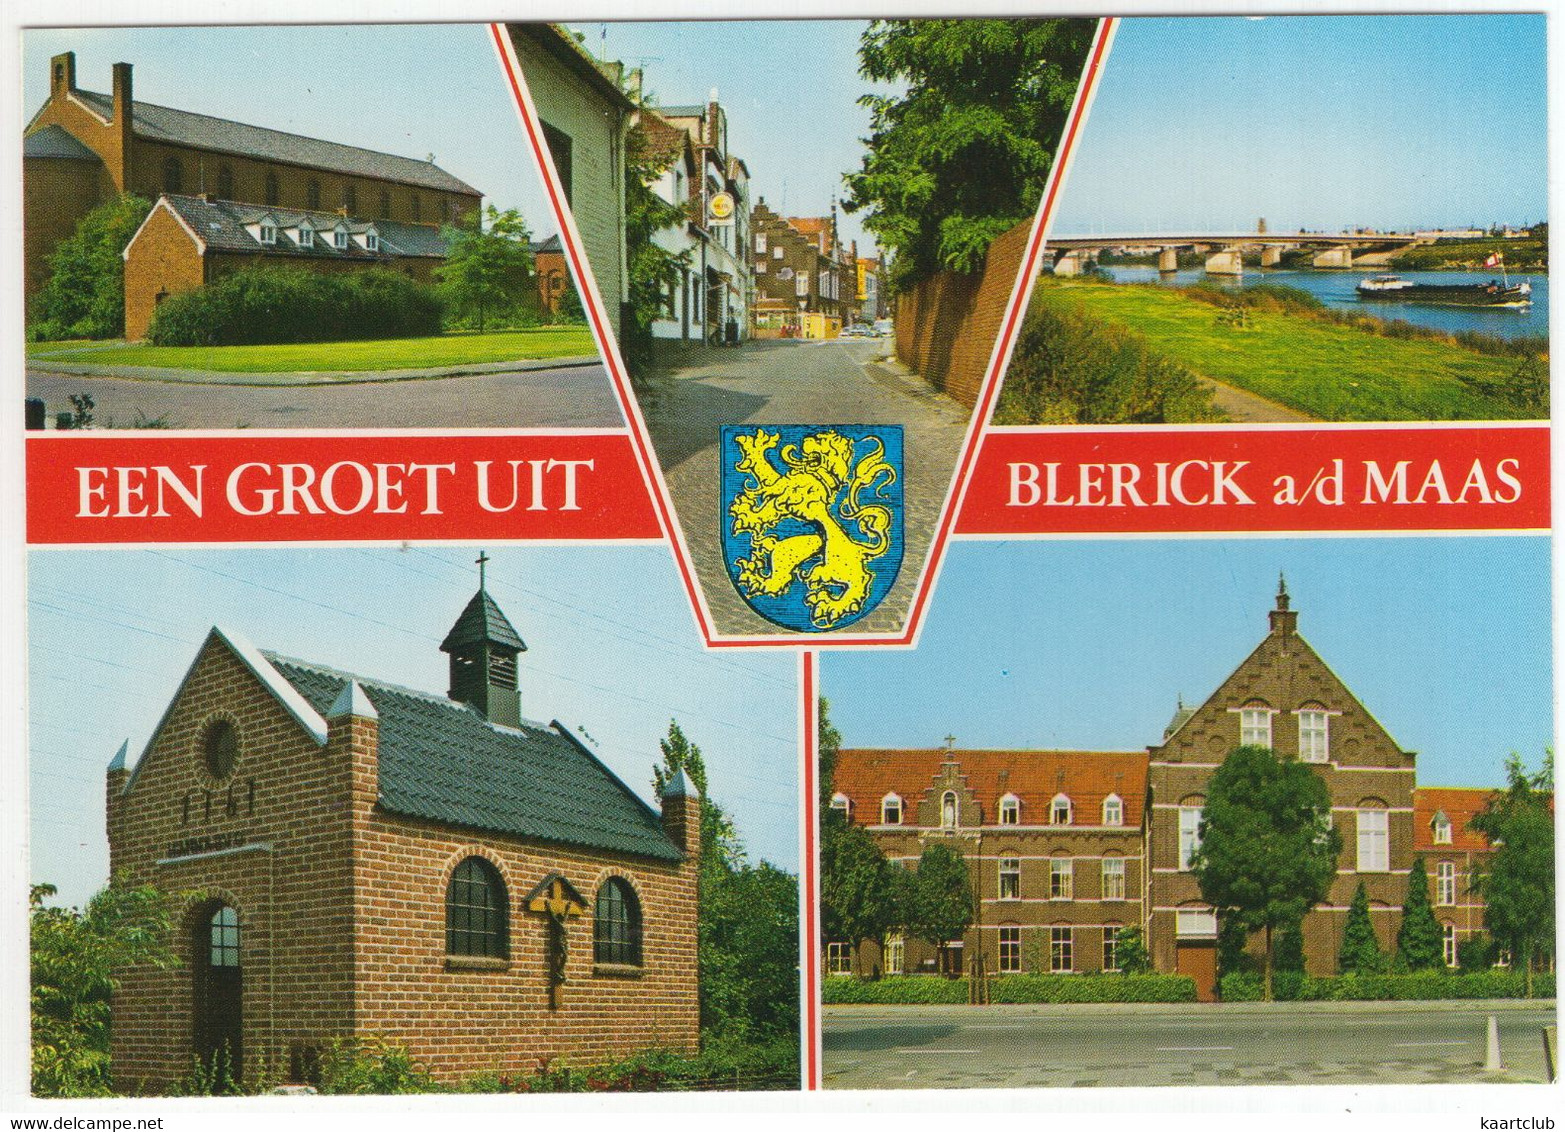 Een Groet Uit Blerick A/d Maas - (Venlo, Limburg, Nederland) - Venlo